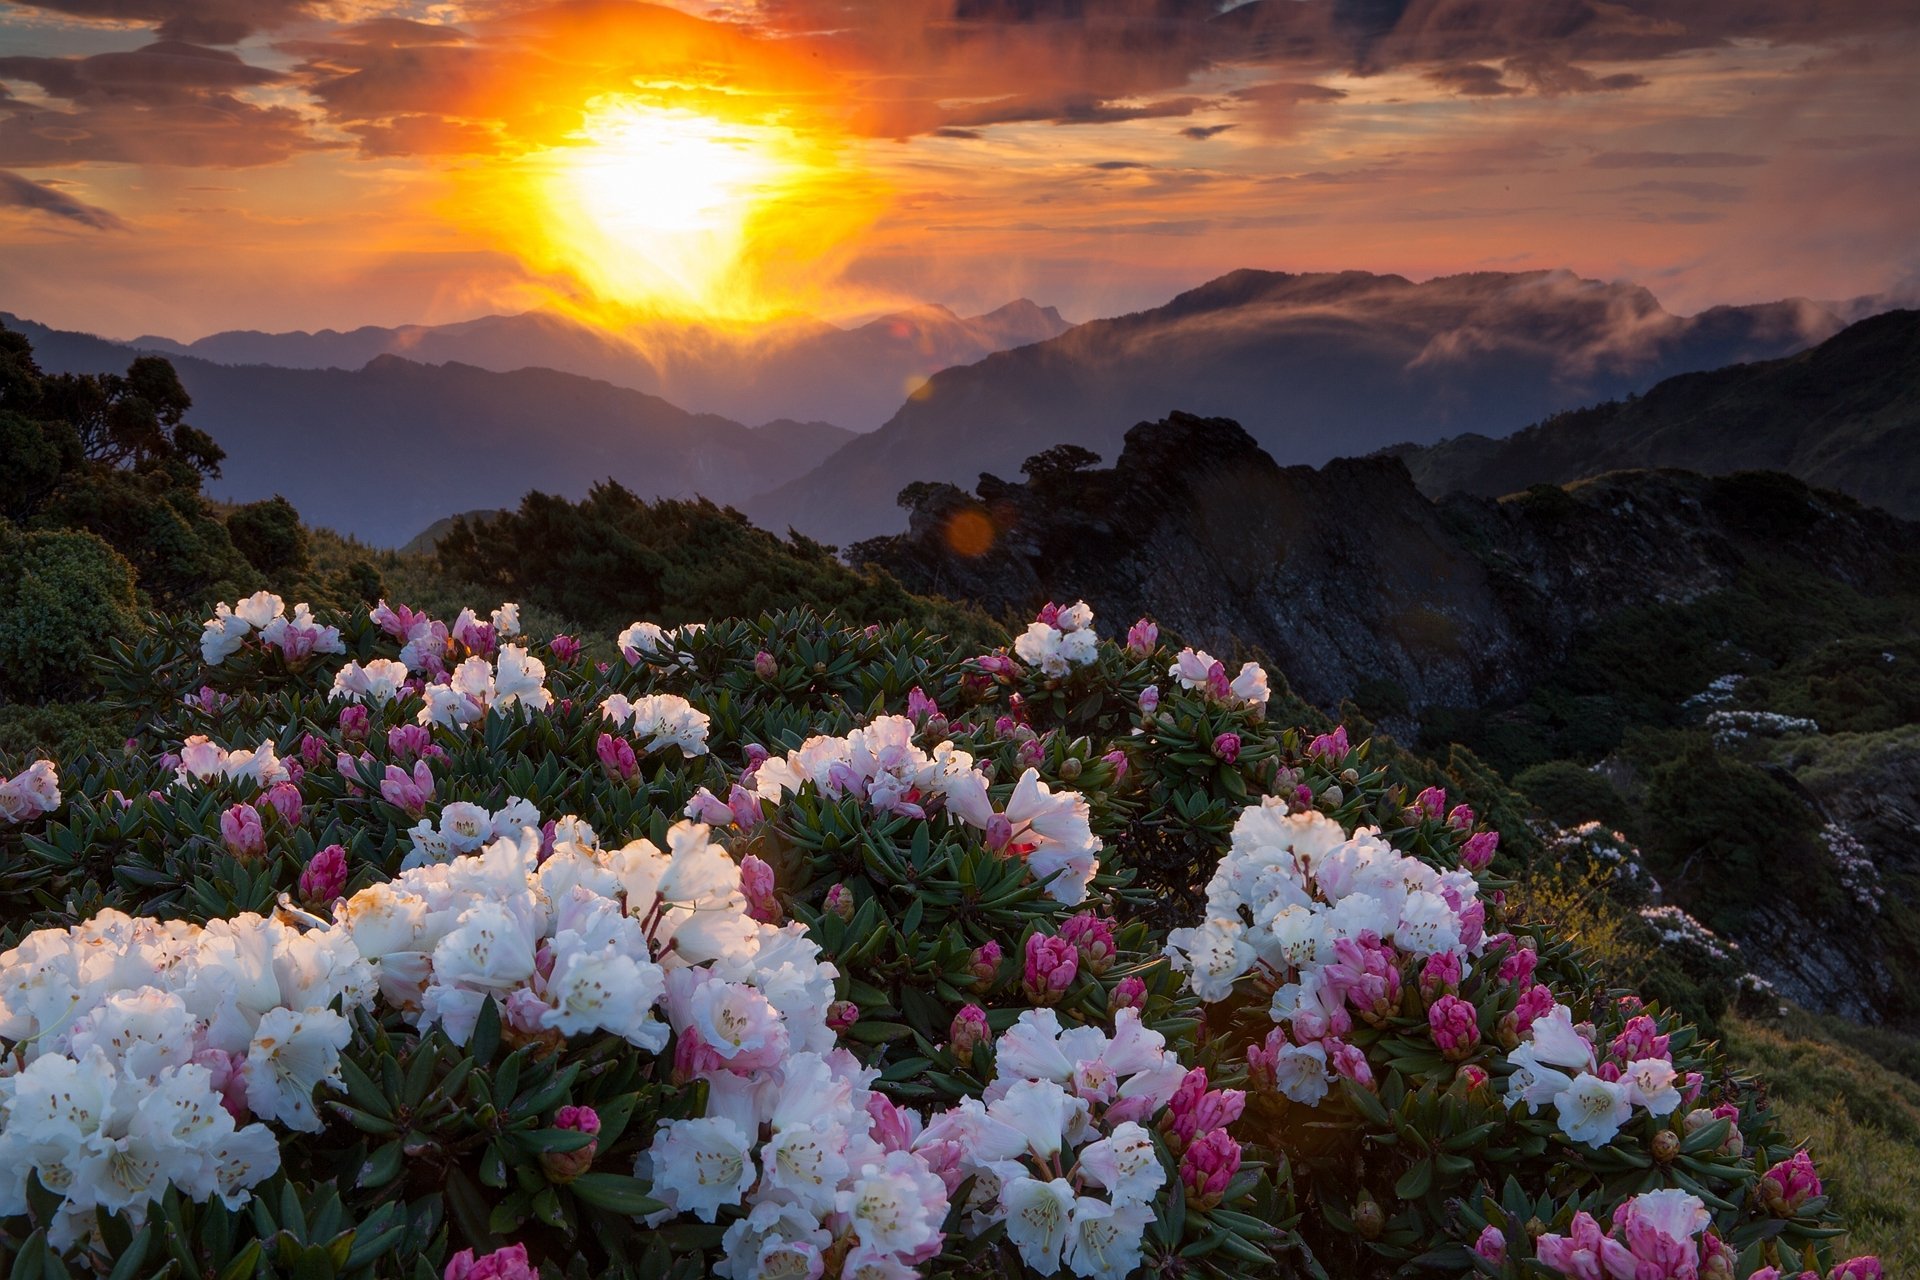 Nature is beautiful. Рододендрон в горах Монти-Сибиллини. Пейзаж цветы. Красивые пейзажи с цветами. Прекрасные цветы.